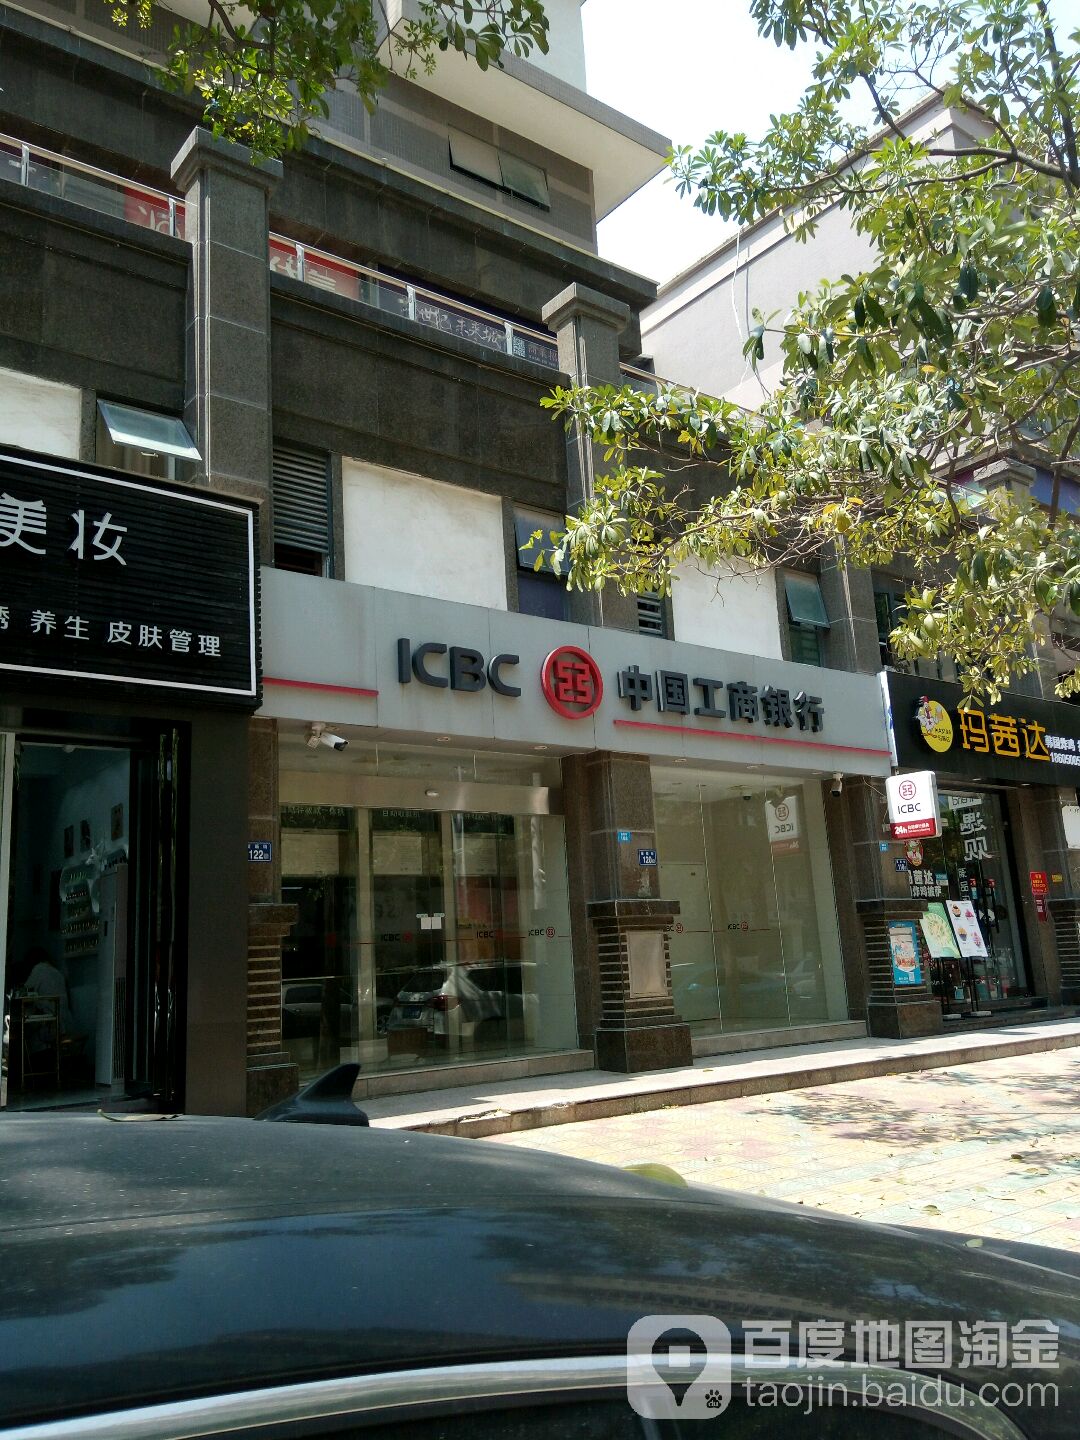 中國工商銀行